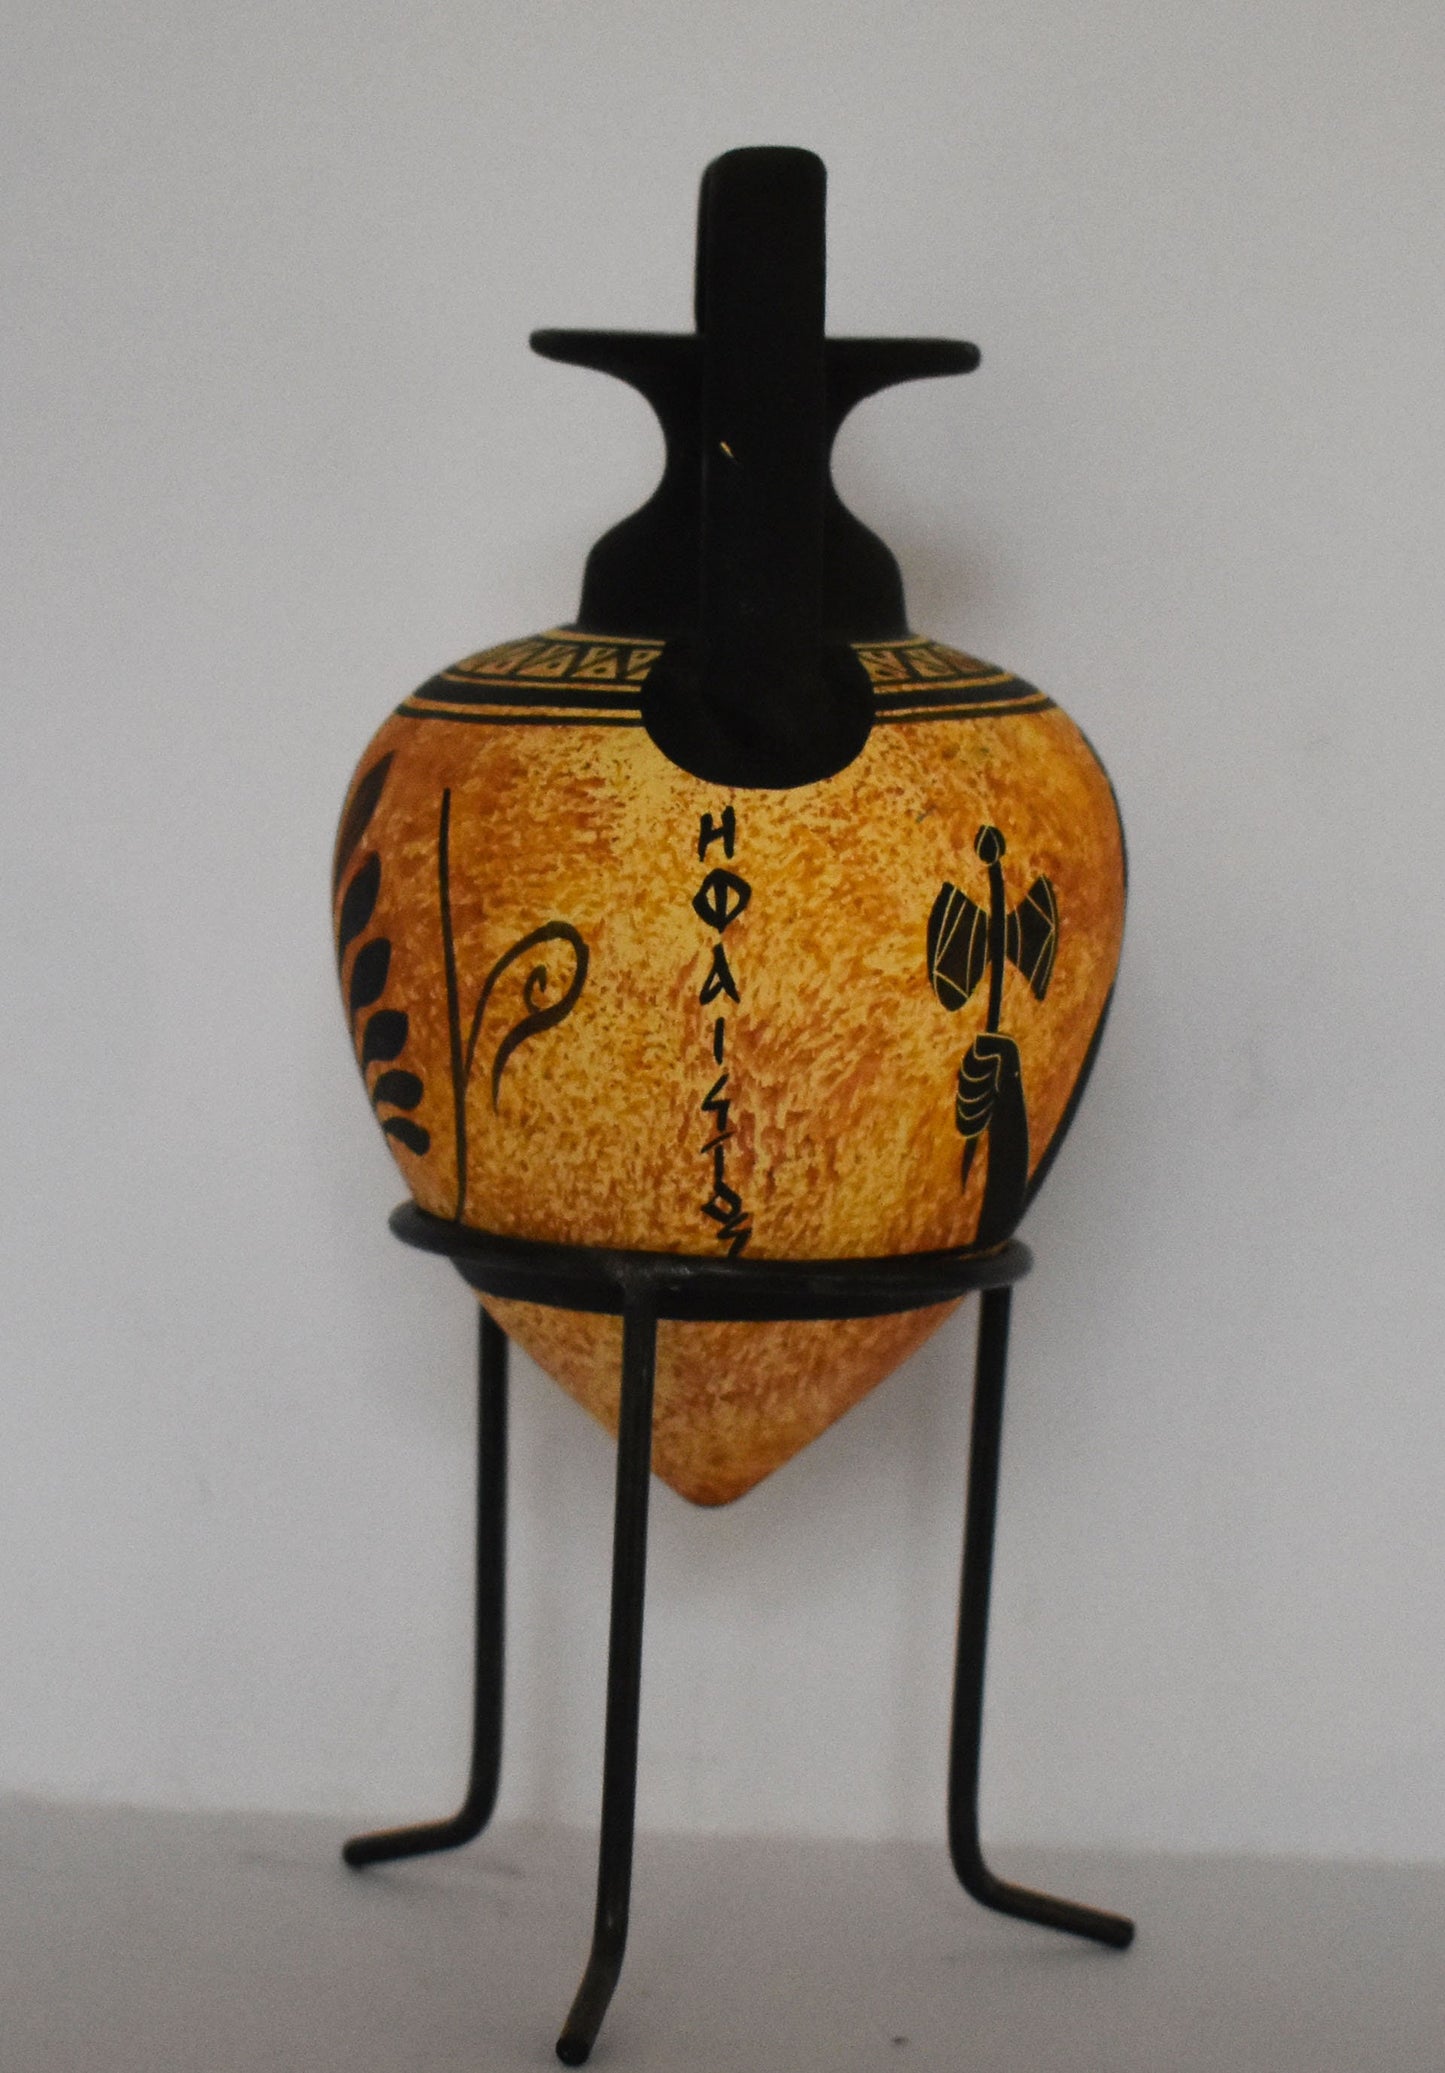 Rhyton - Vessel for Libations or Drinking -  Hephaestus - God of Blacksmiths,Fire, Craftsmen, Volcanoes- Floral design - Ceramic Vase